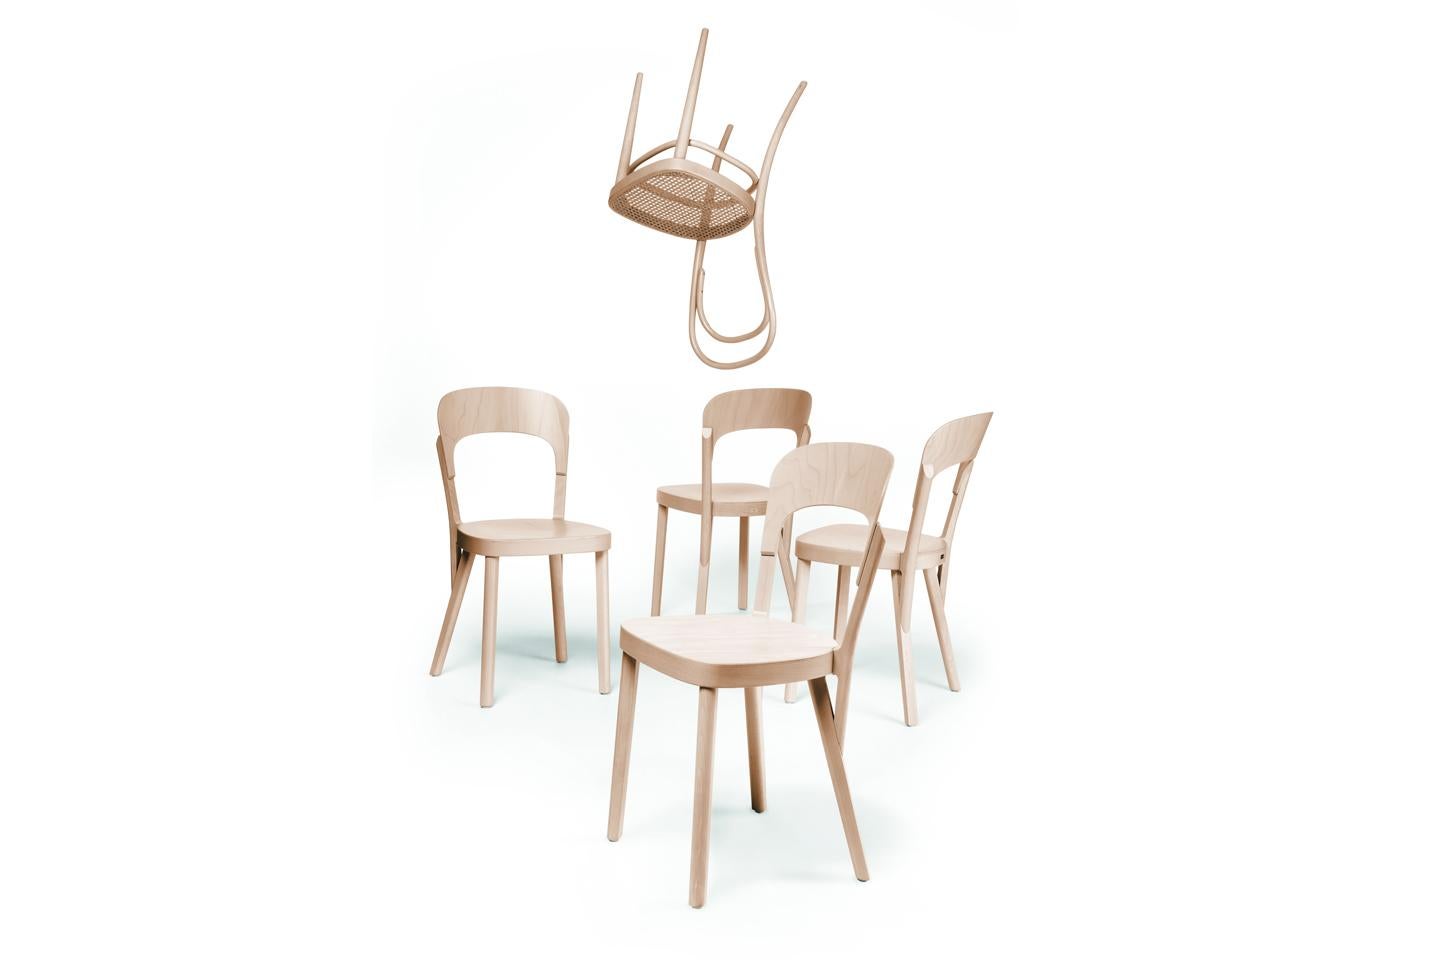 German 107 Solid Wood Chair Designed by Robert Stadler